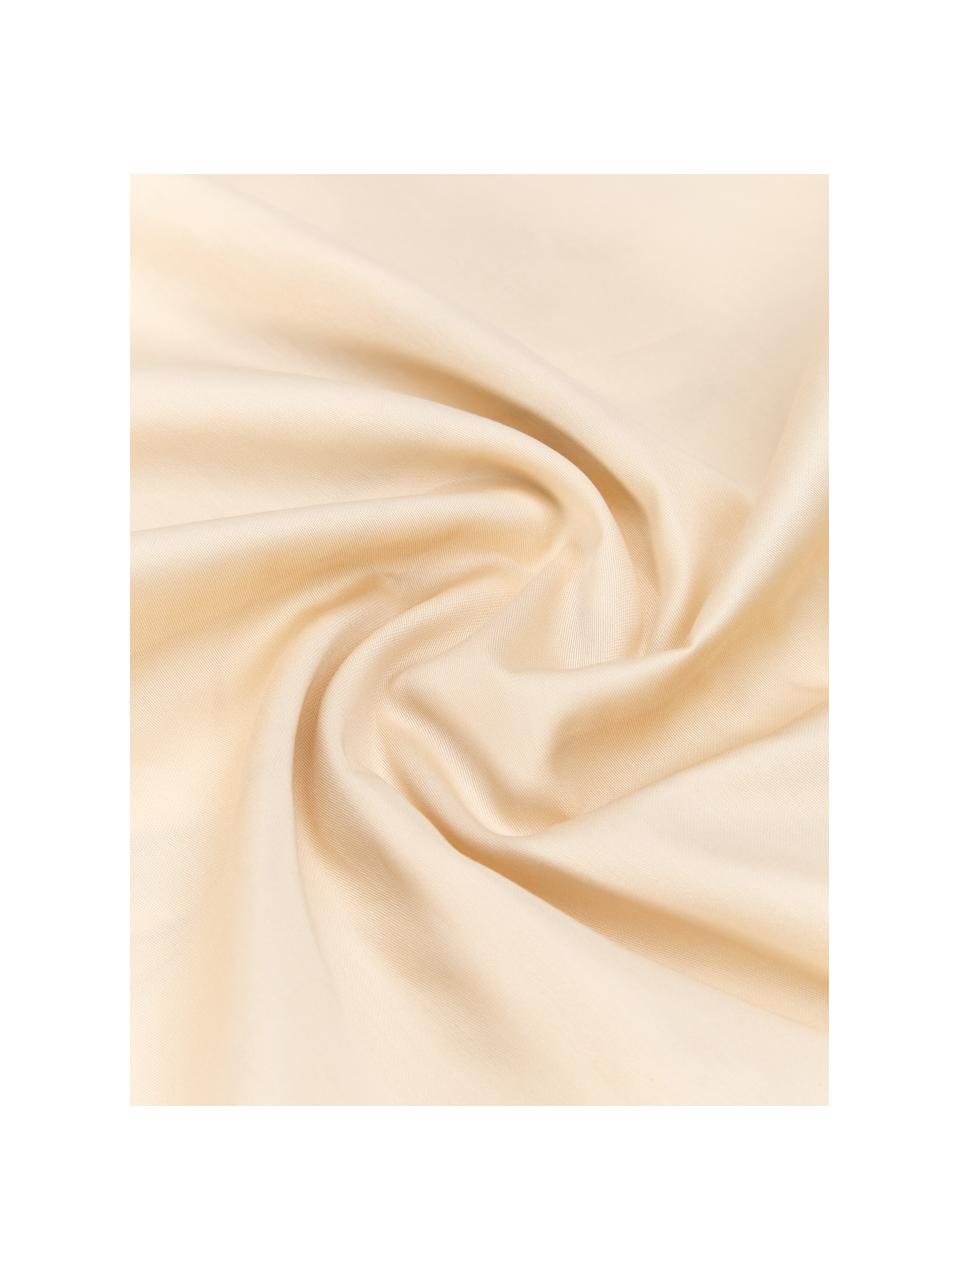 Taies d'oreiller en satin de coton bio Aimee de Candice Gray, 2 pièces, Vert, beige, larg. 50 x long. 70 cm